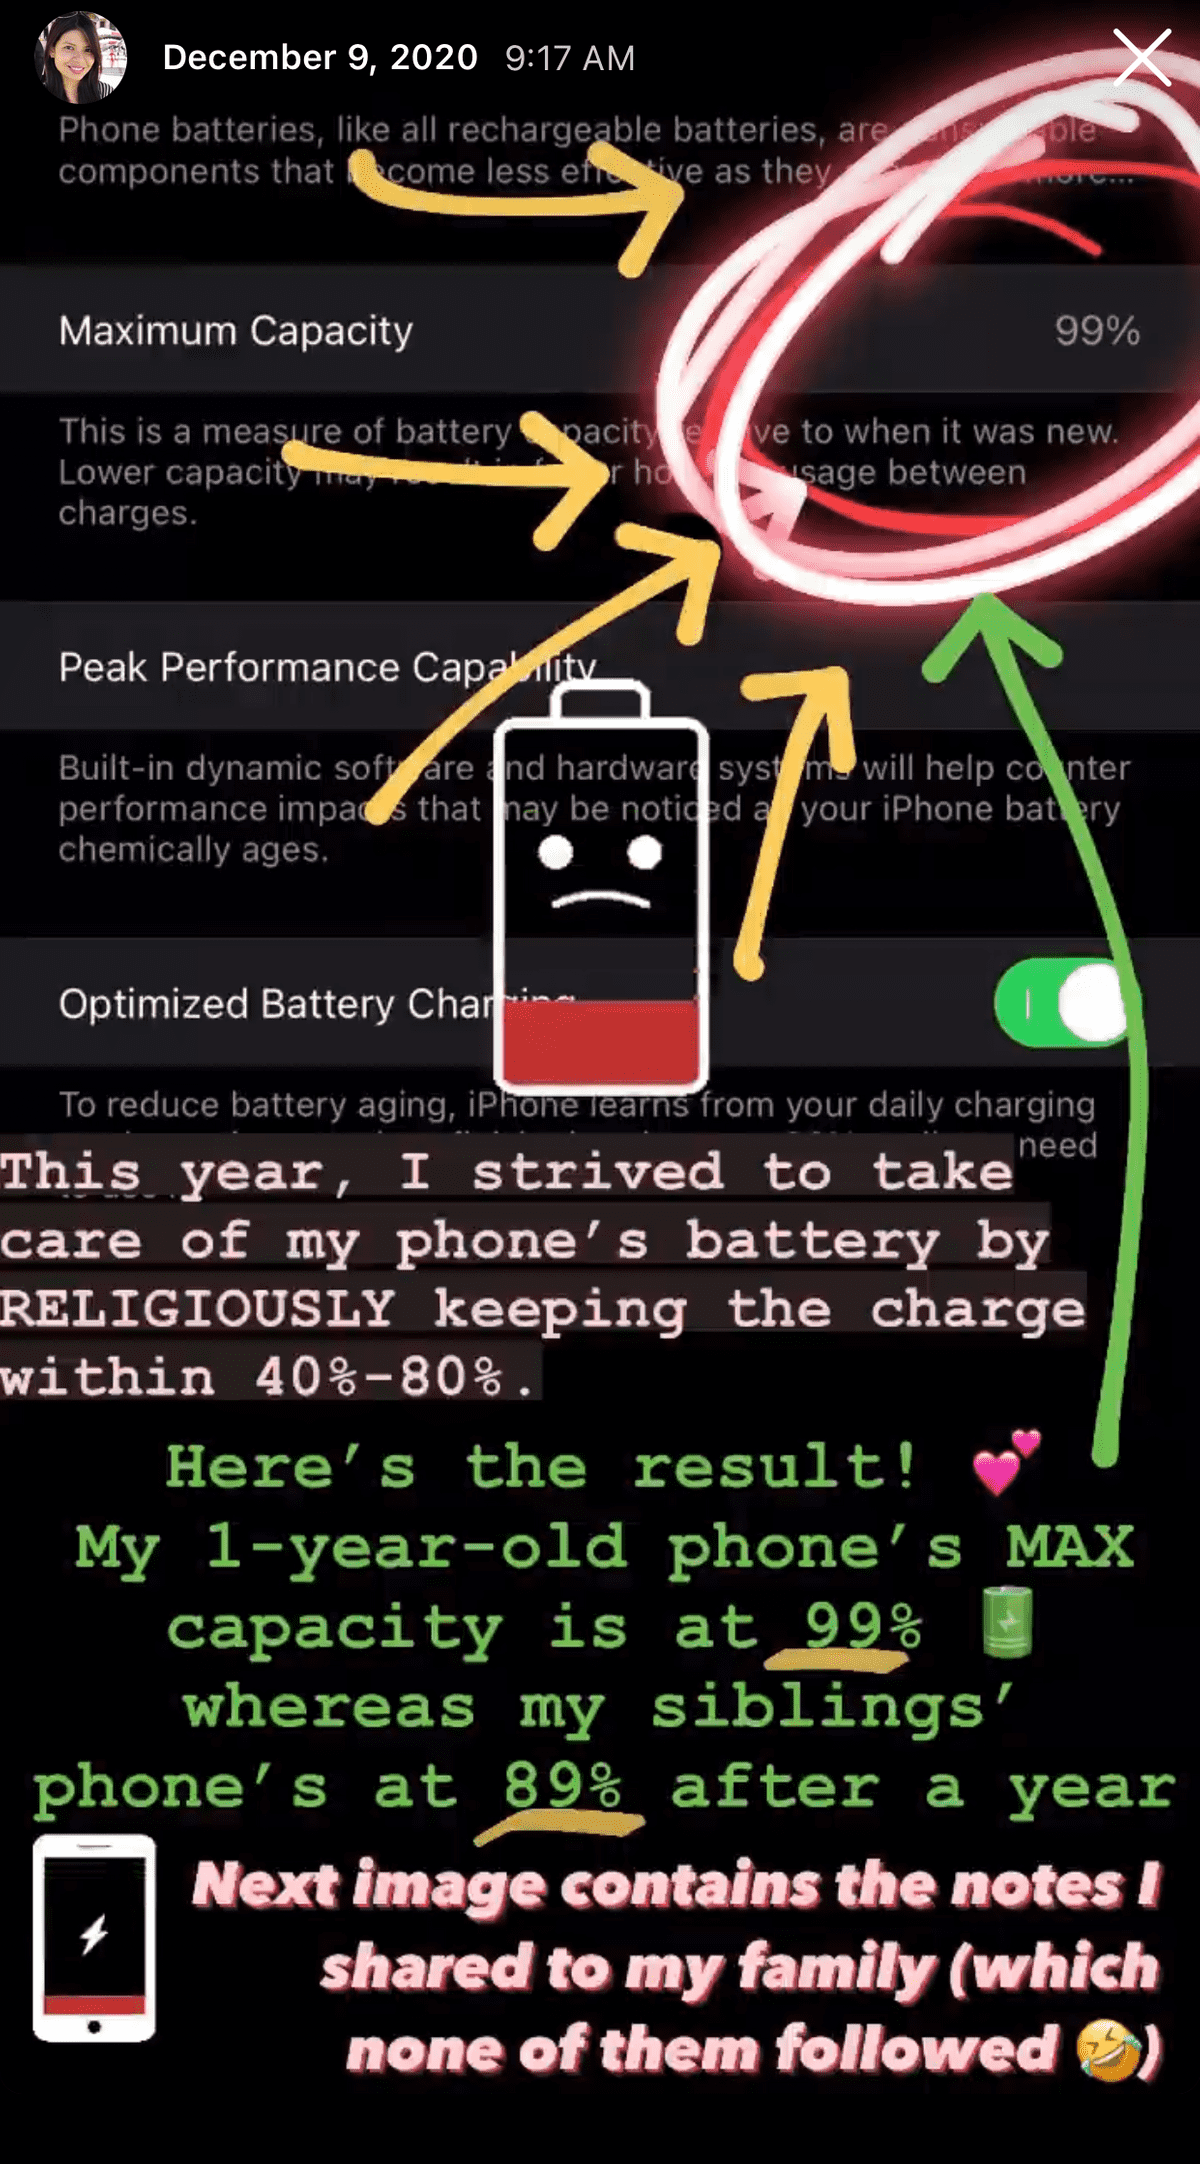 Maximum Battery Capacity is at 99%